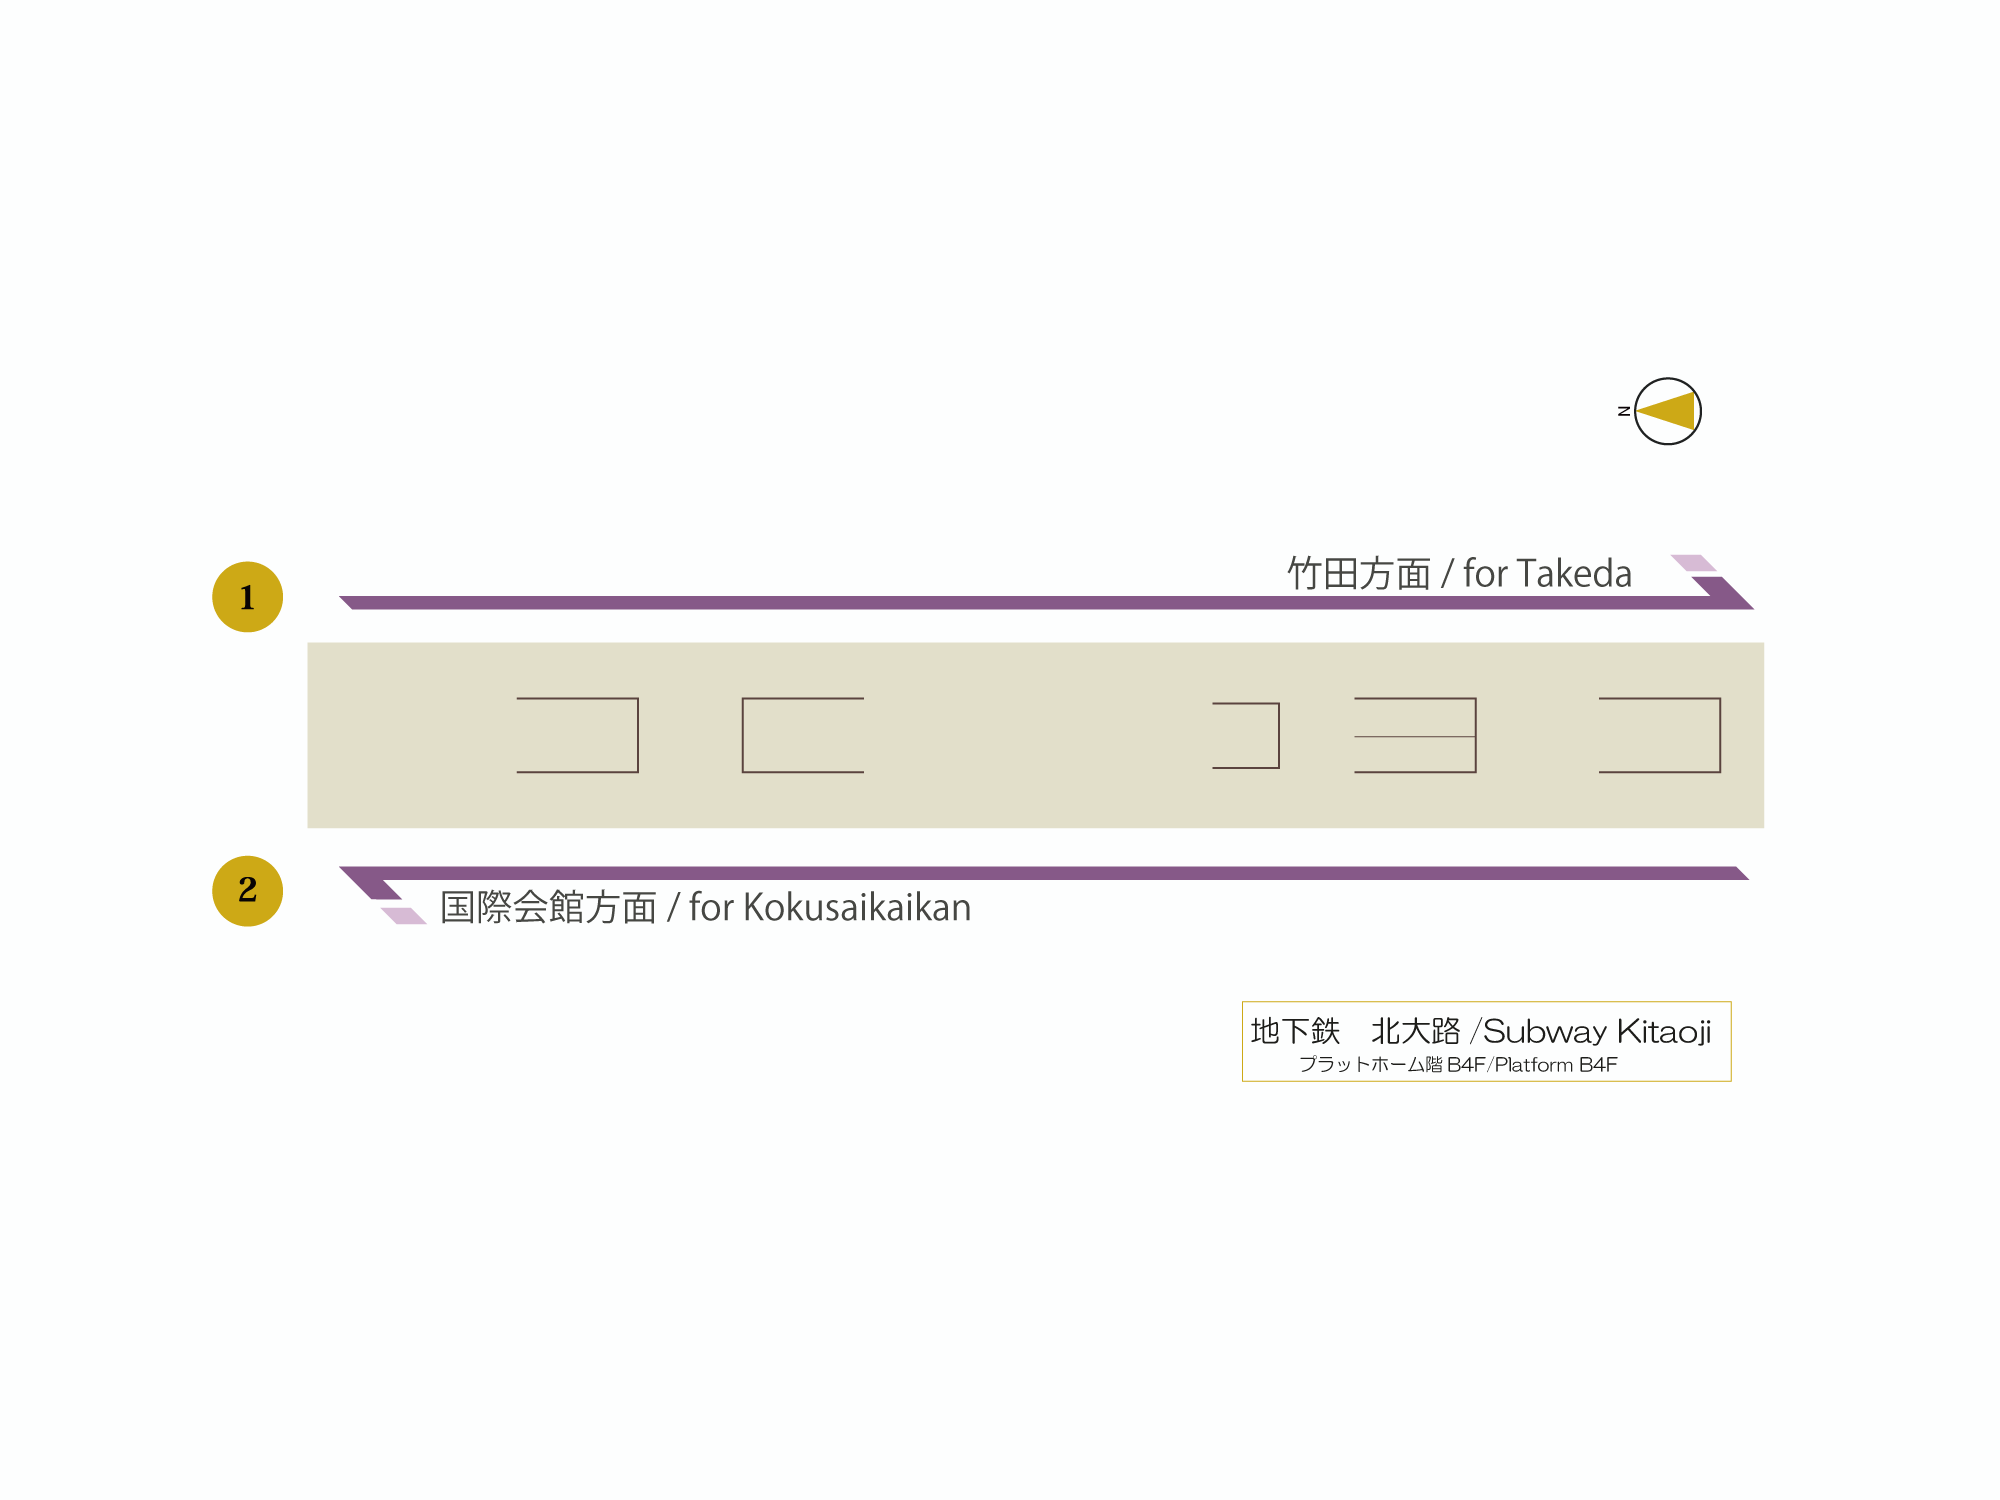 構内図表示 歩くまち京都 バス 鉄道の達人